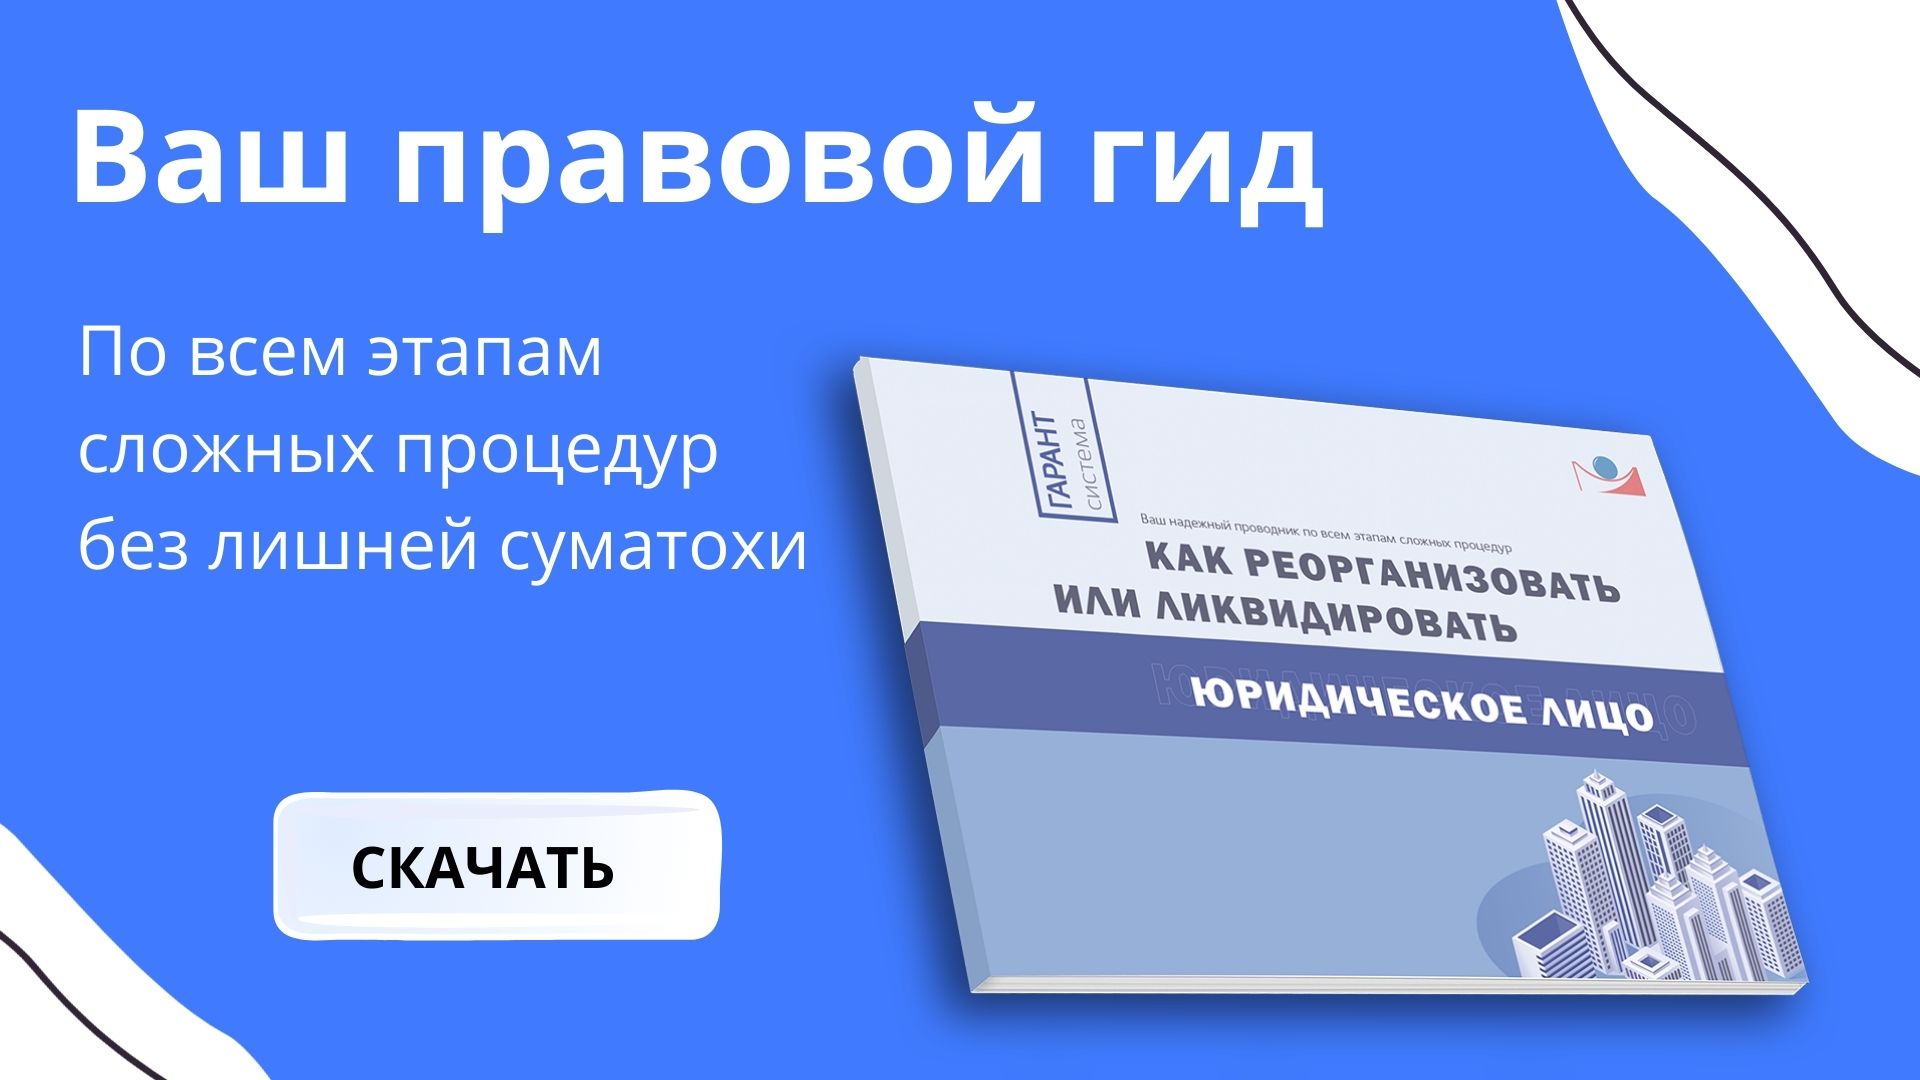 http://action.garant.ru/book-liquidation?utm_source=email&utm_medium=letter&utm_campaign=kadr1603